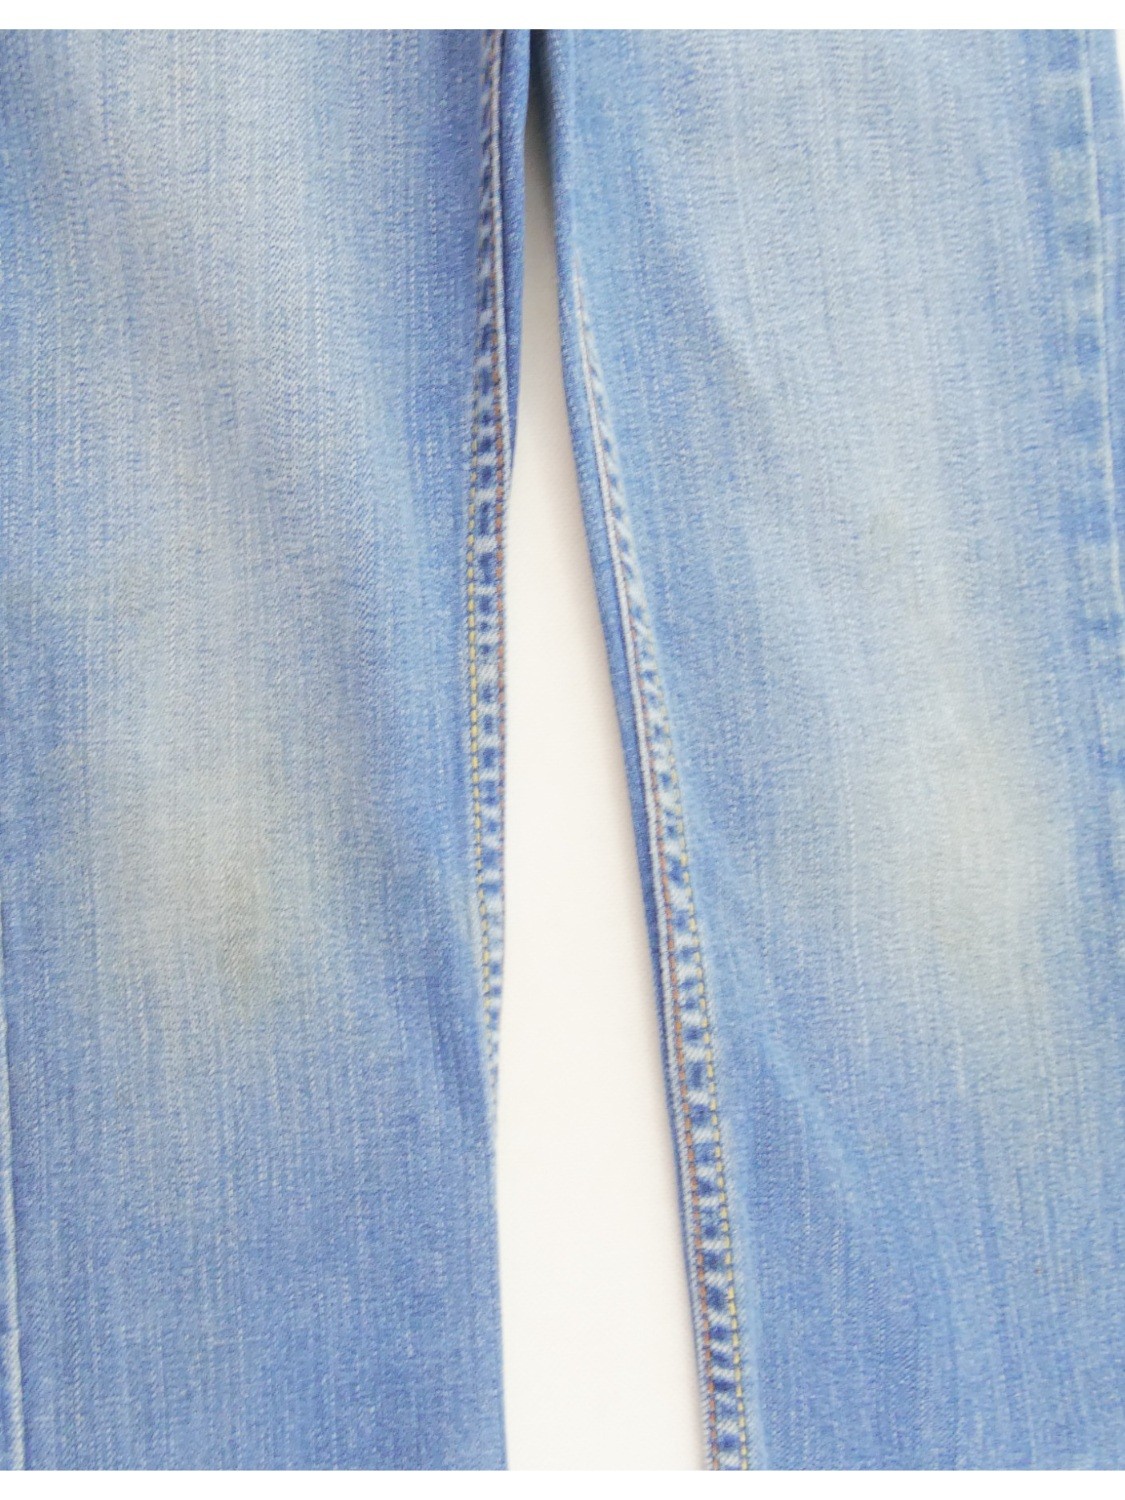 Bouton Jeans tête de mort pour coudre vos jean, short ou jupe en